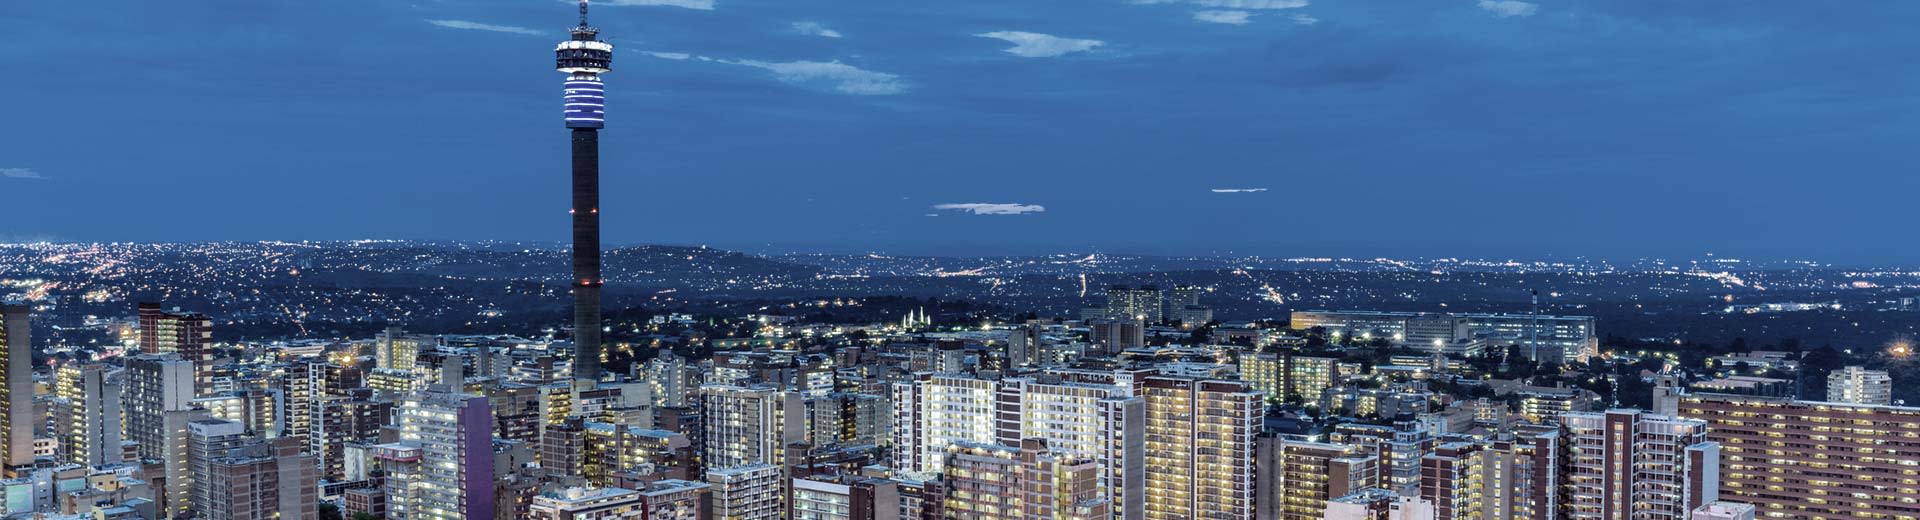 L'horizon étincelant Johannesburg par une nuit sombre, avec des immeubles de bureaux de grande hauteur et des unités résidentielles.